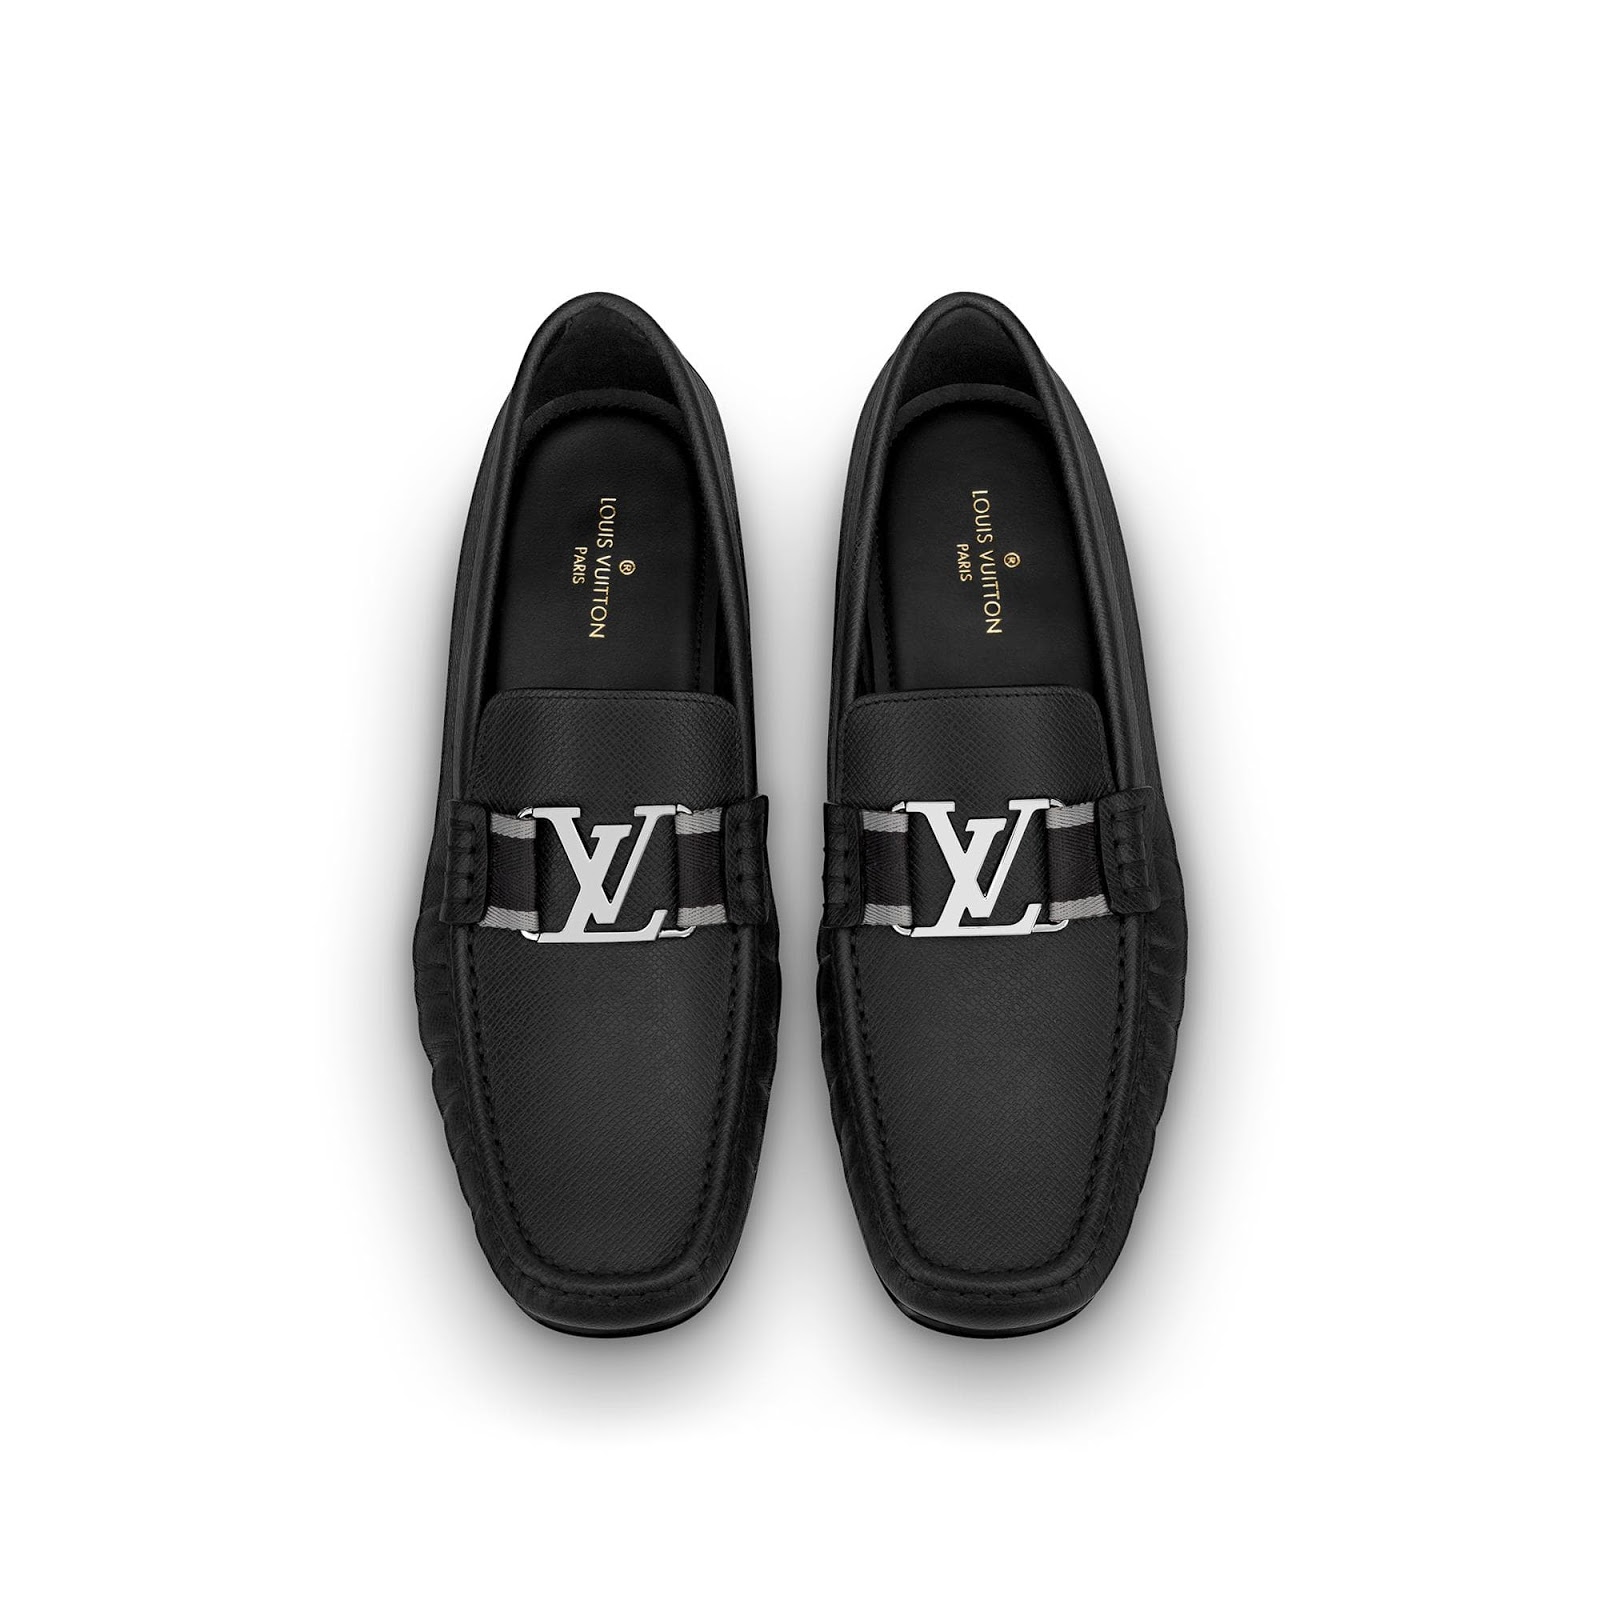 Thắt lưng Louis Vuitton nam fake chính hãng mặt vàng sáng bóng dây đen sần  LV